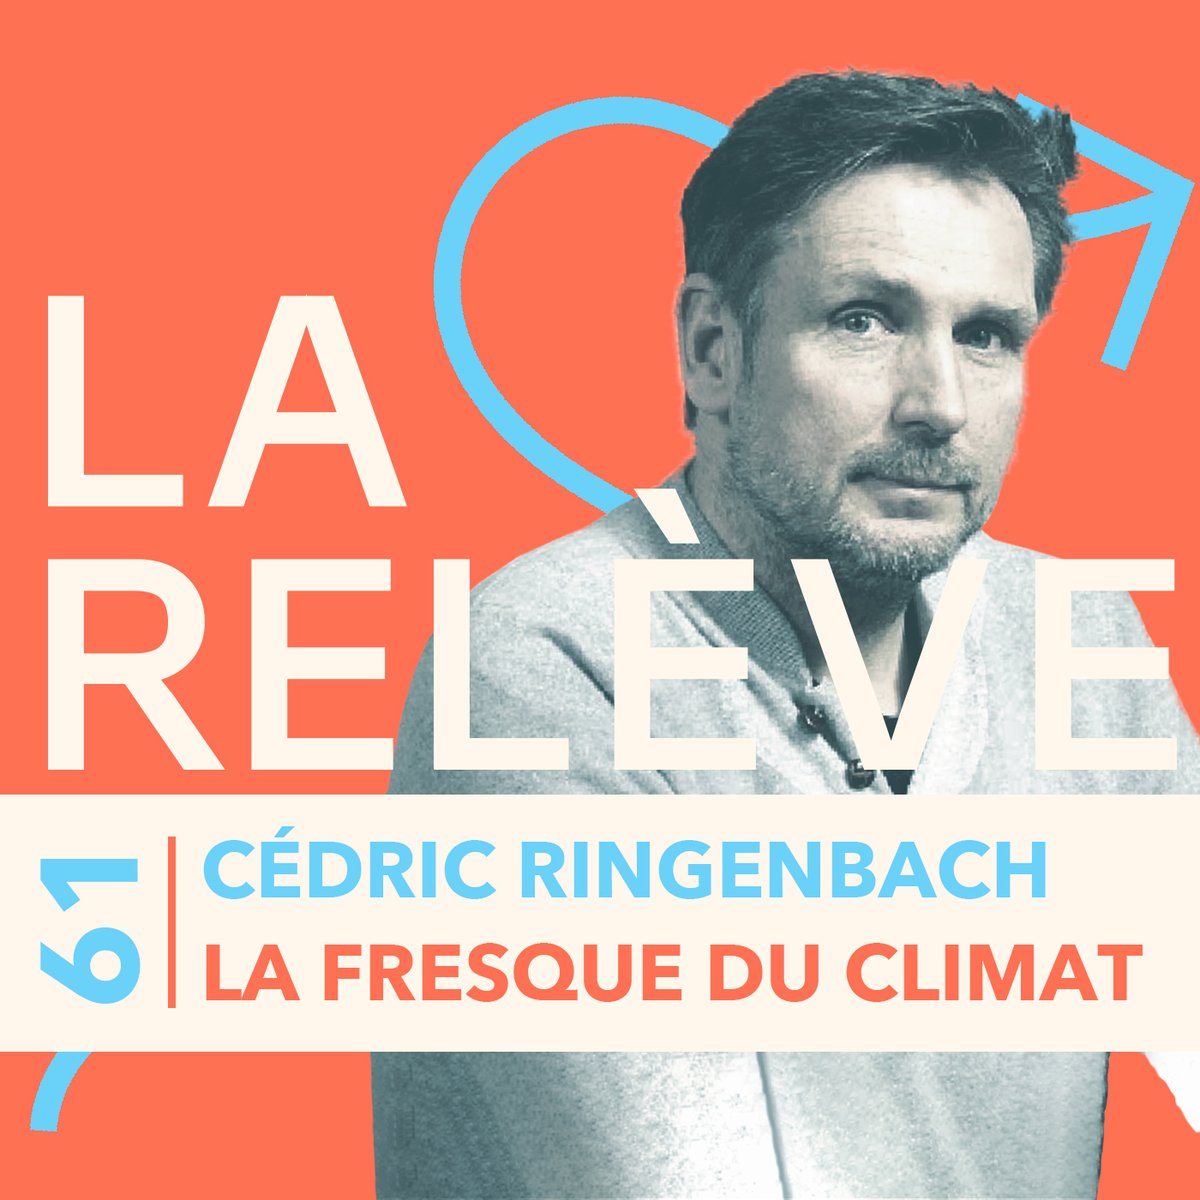 Pour le nouvel épisode du #podcast La Relève, @thiblam reçoit @cedringen, Président et Fondateur de la @fresqueduclimat. Pour écouter l'épisode : audmns.com/oLHIiAR #impact #écologie